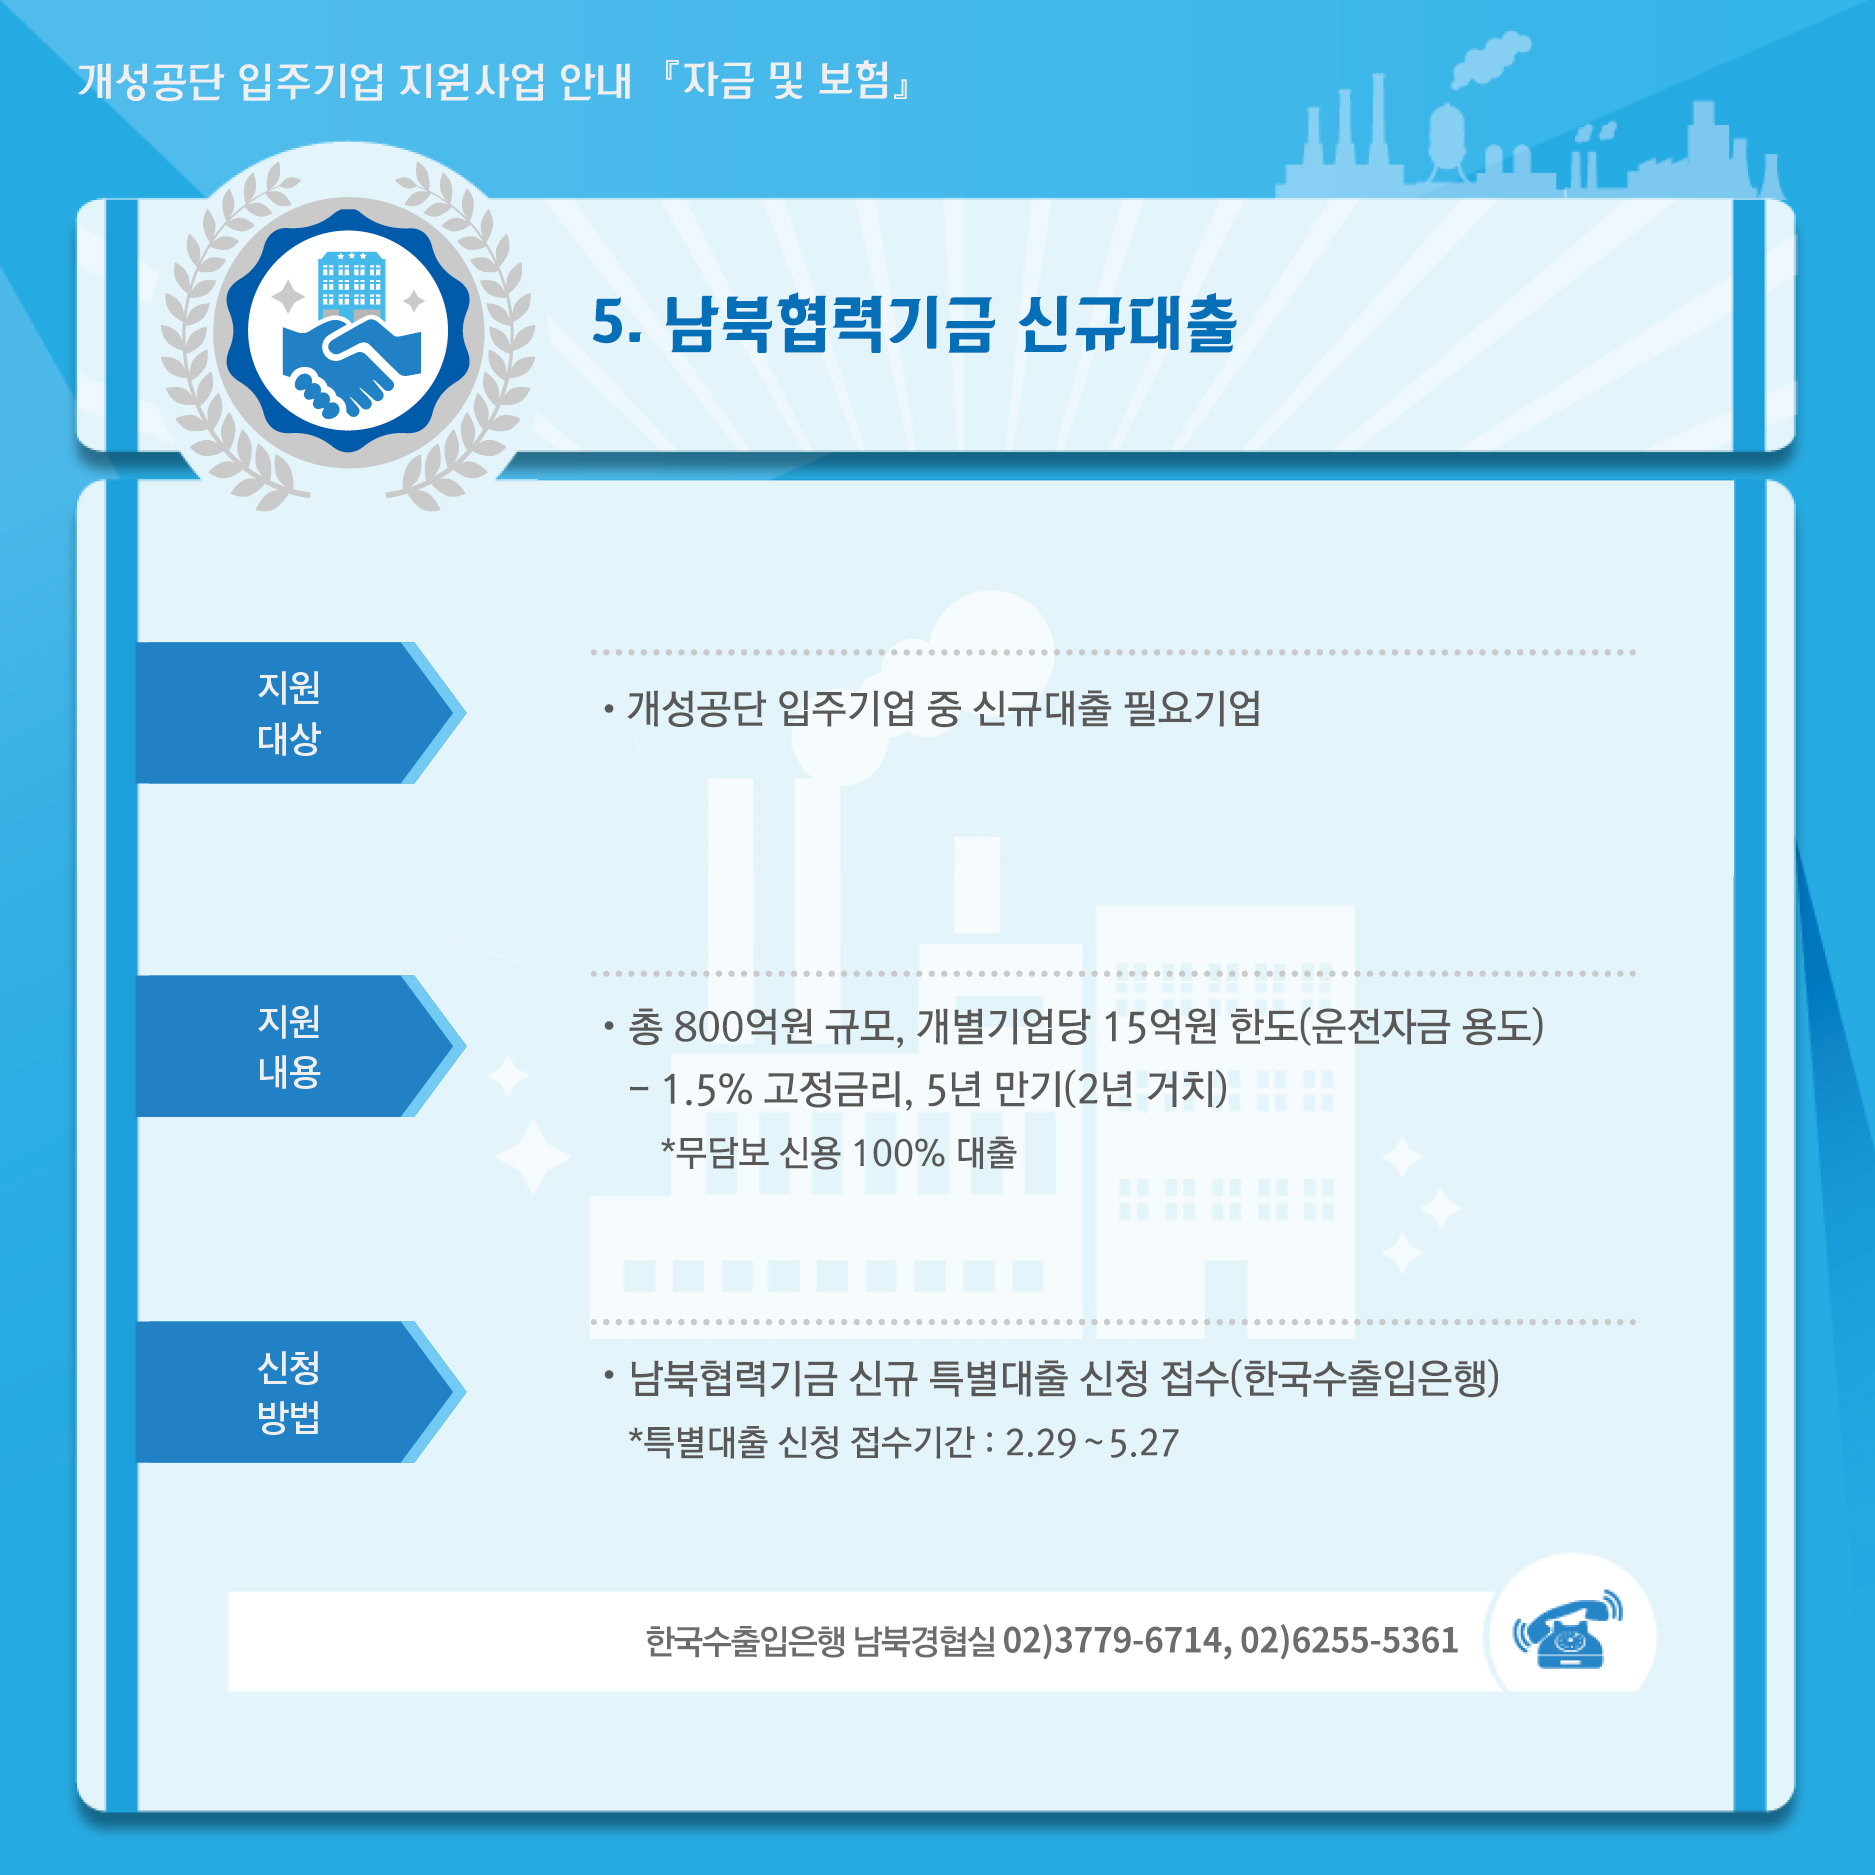 5. 남북협력기금 신규대출